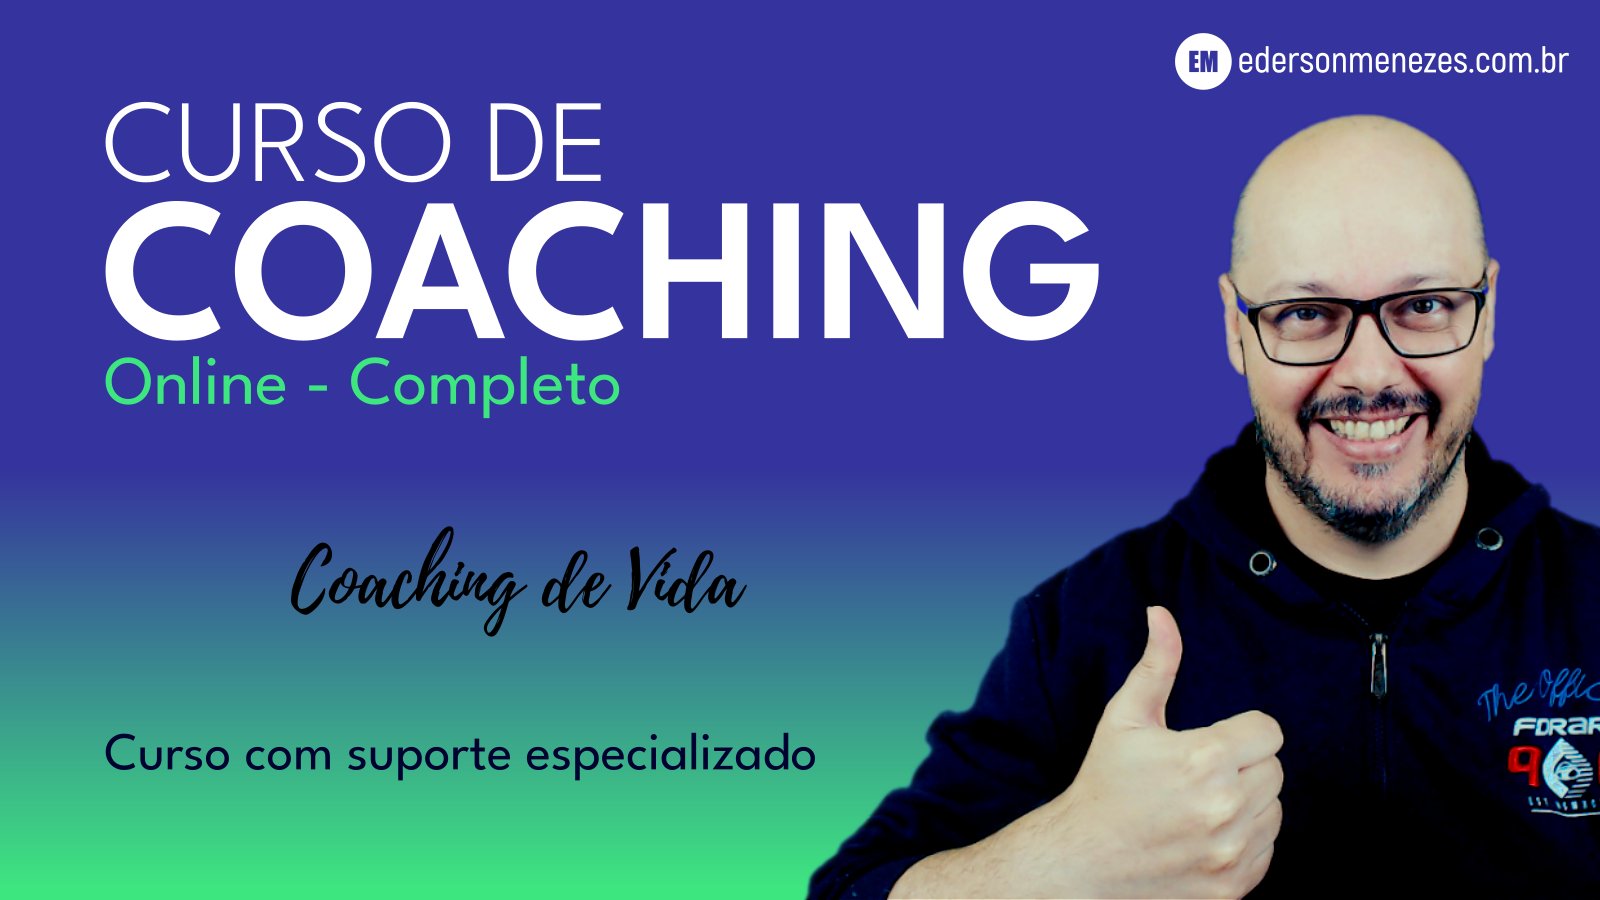 Curso de Coaching Online Completo com Ederson Menezes